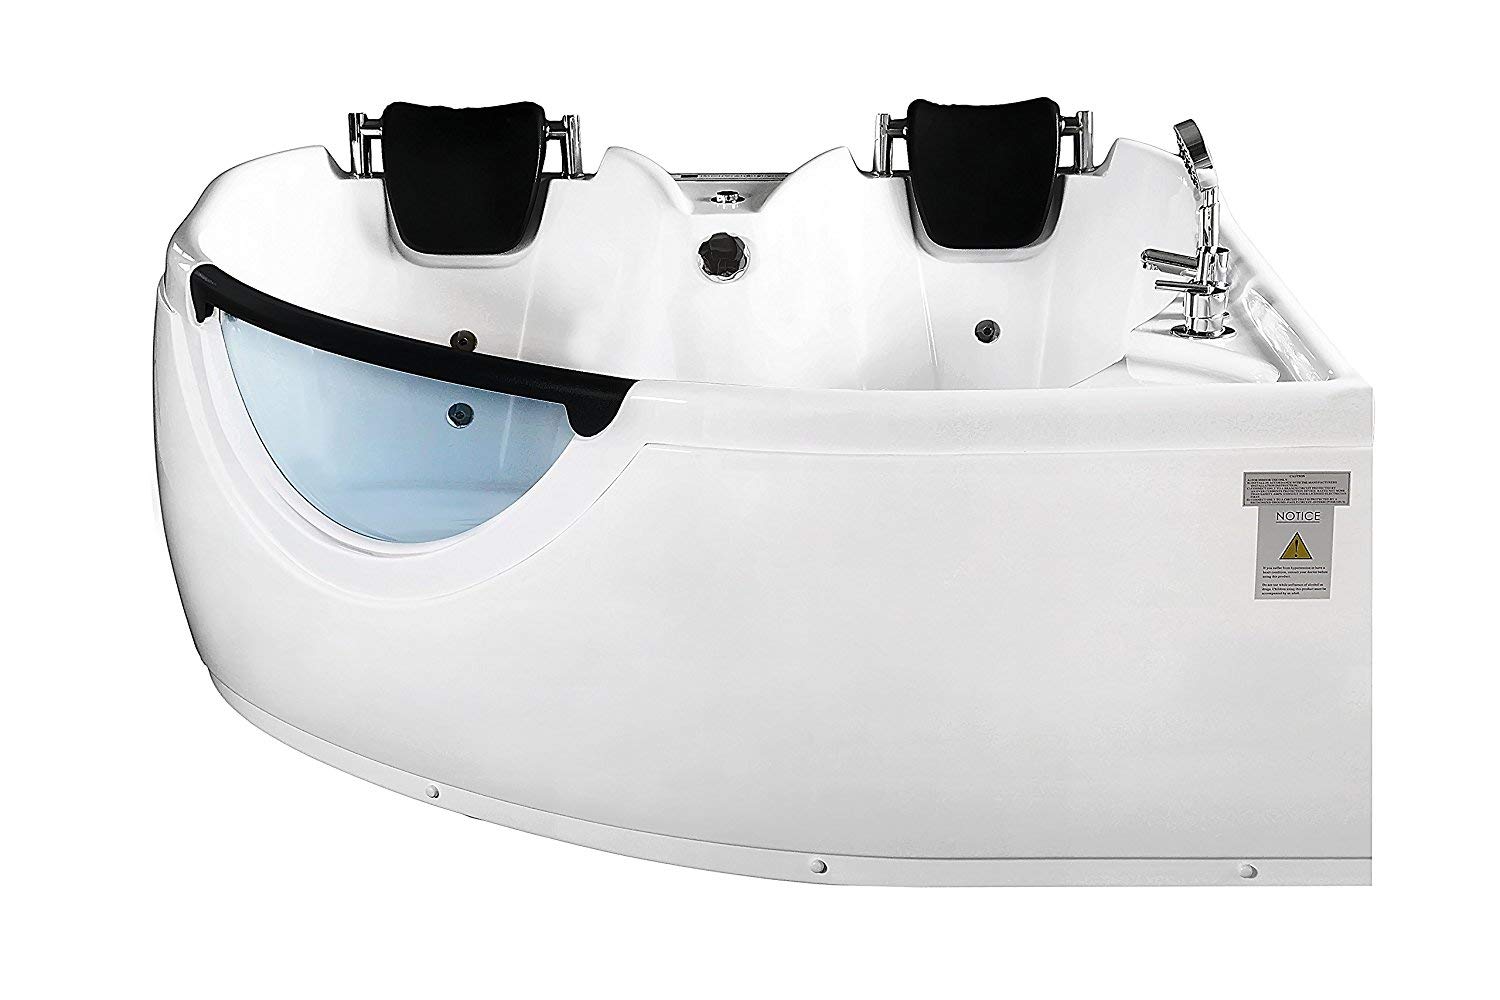 ARIEL BT-150150 Whirlpool Bathtub with Hydro Massage